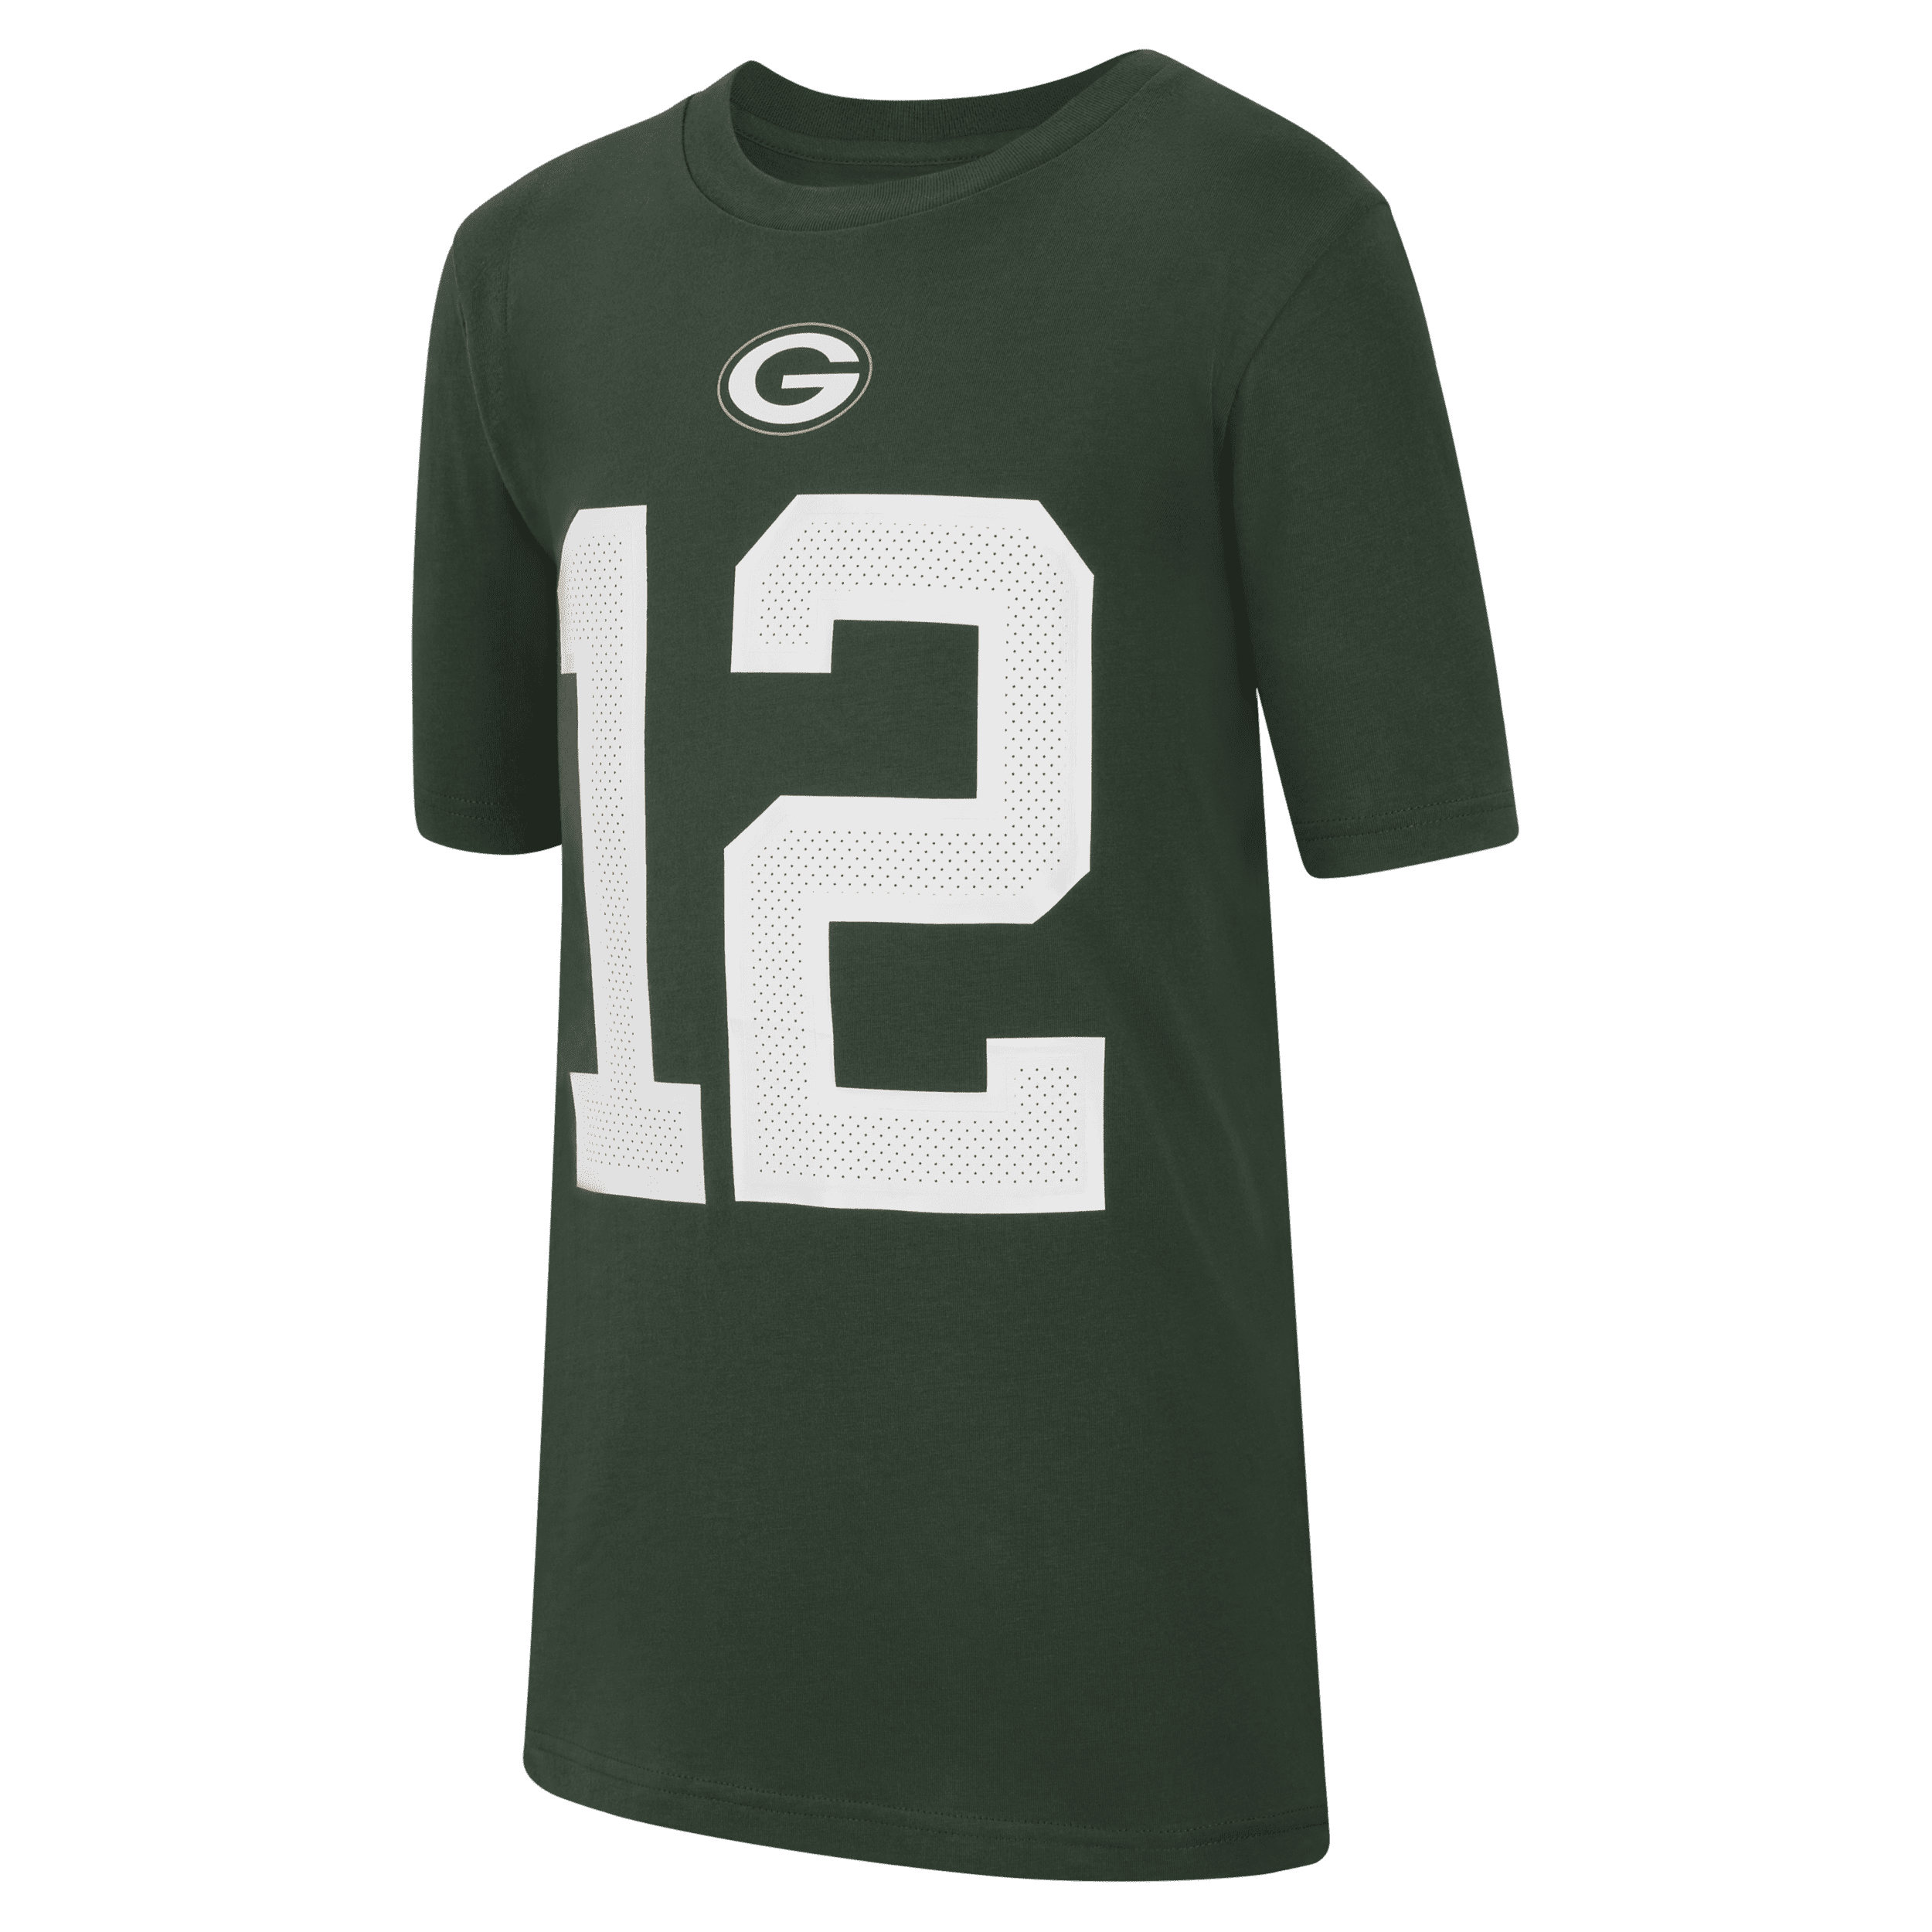 Nike (NFL Green Bay Packers) Camiseta - Niño/a - Verde